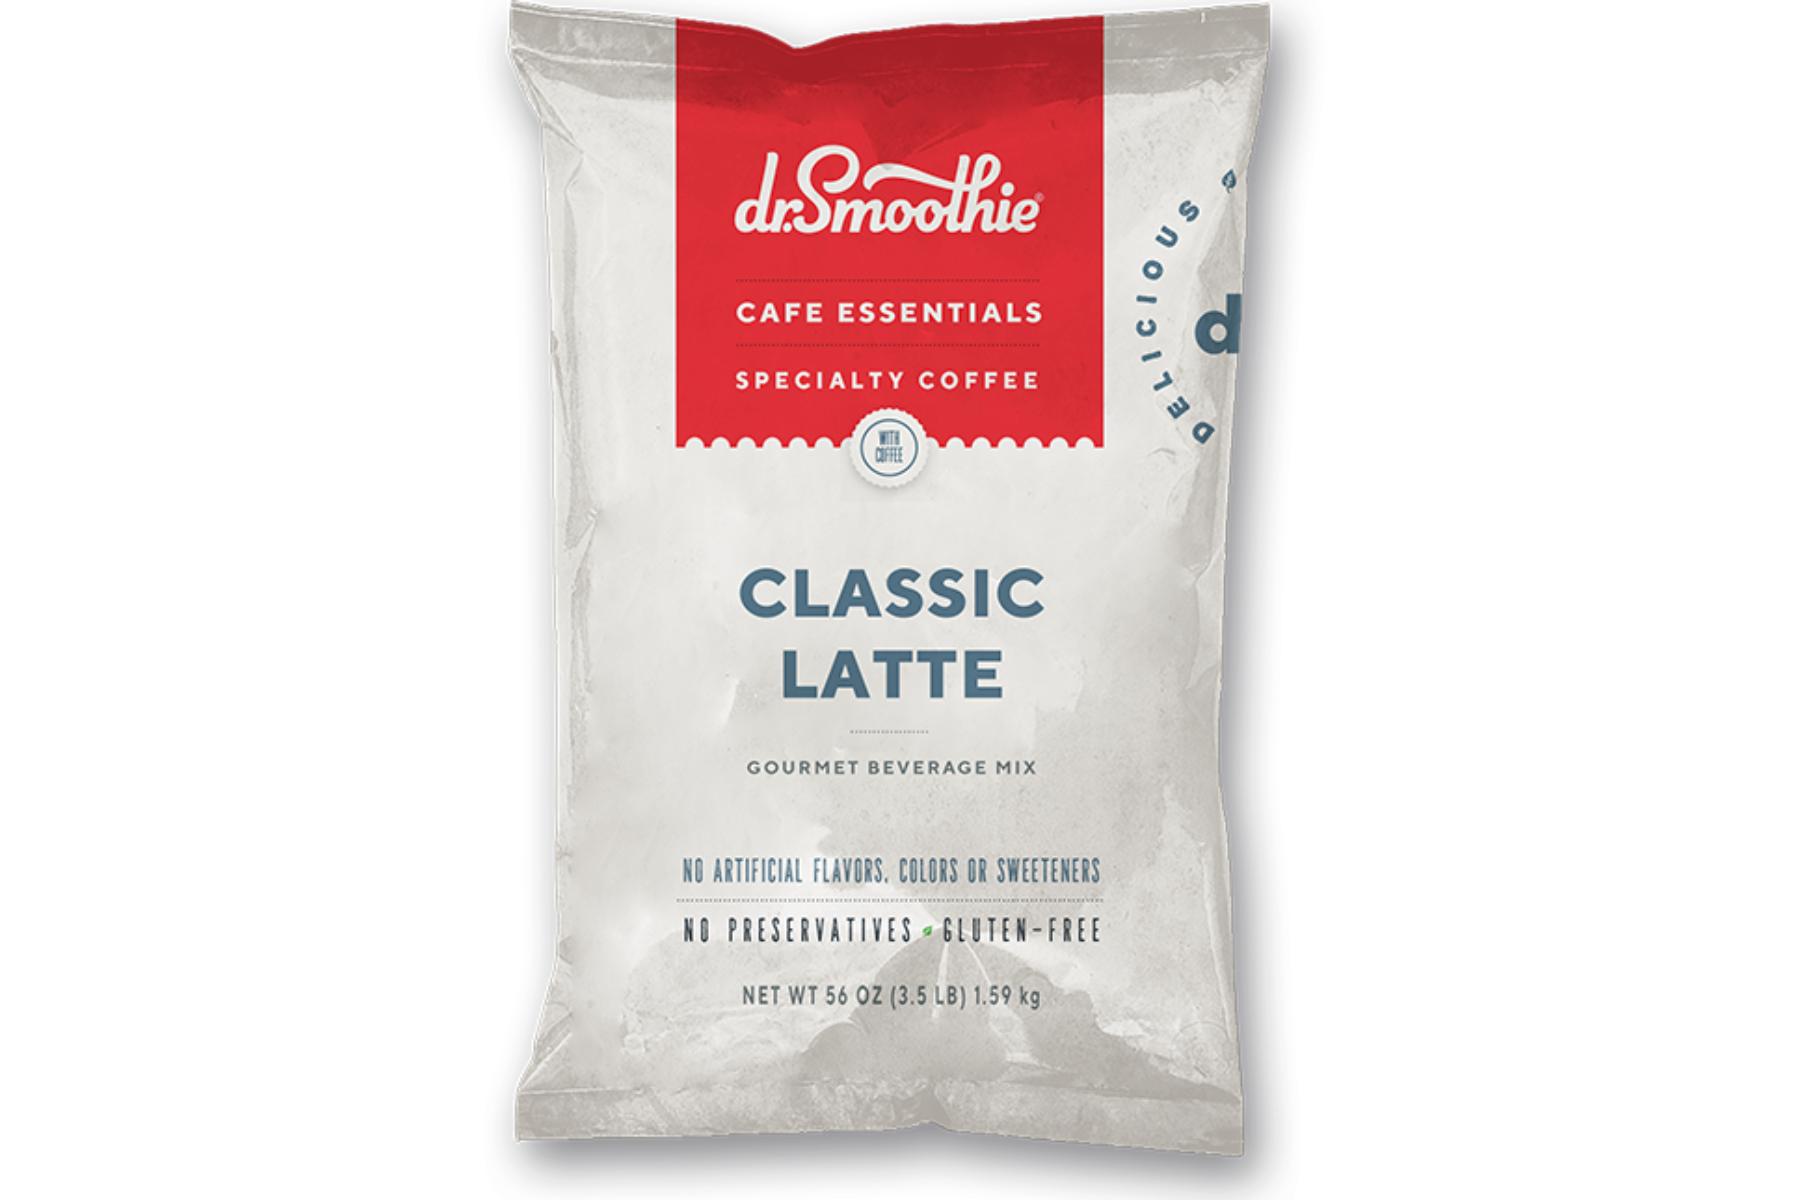 Dr. Smoothie Cafe Essentials Coffee - 3.5lb Bulk Bag: Classic Latte